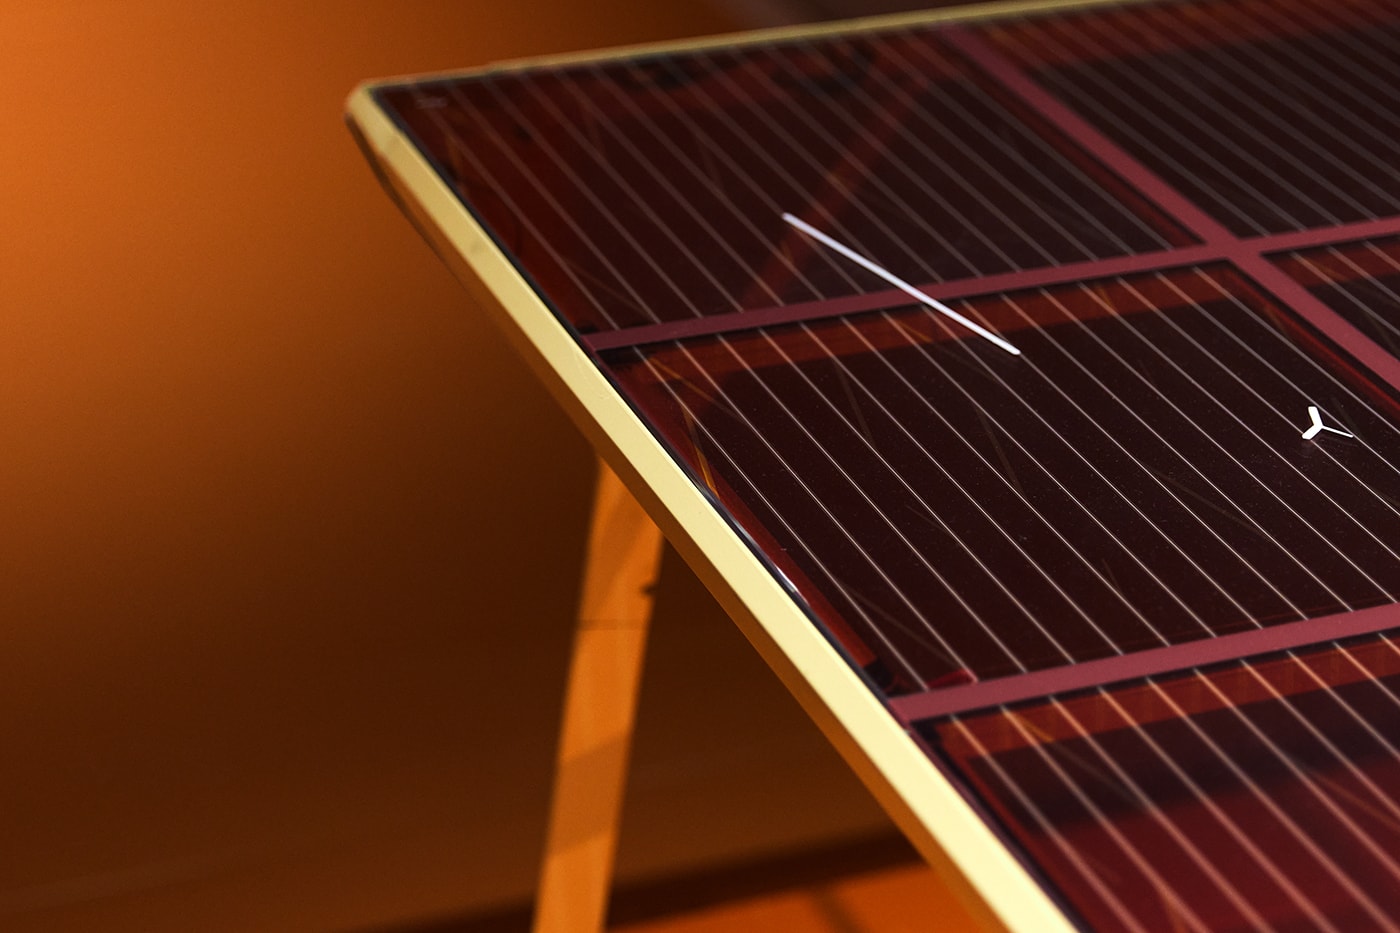 How Do We Design For A Solar-Powered Future?